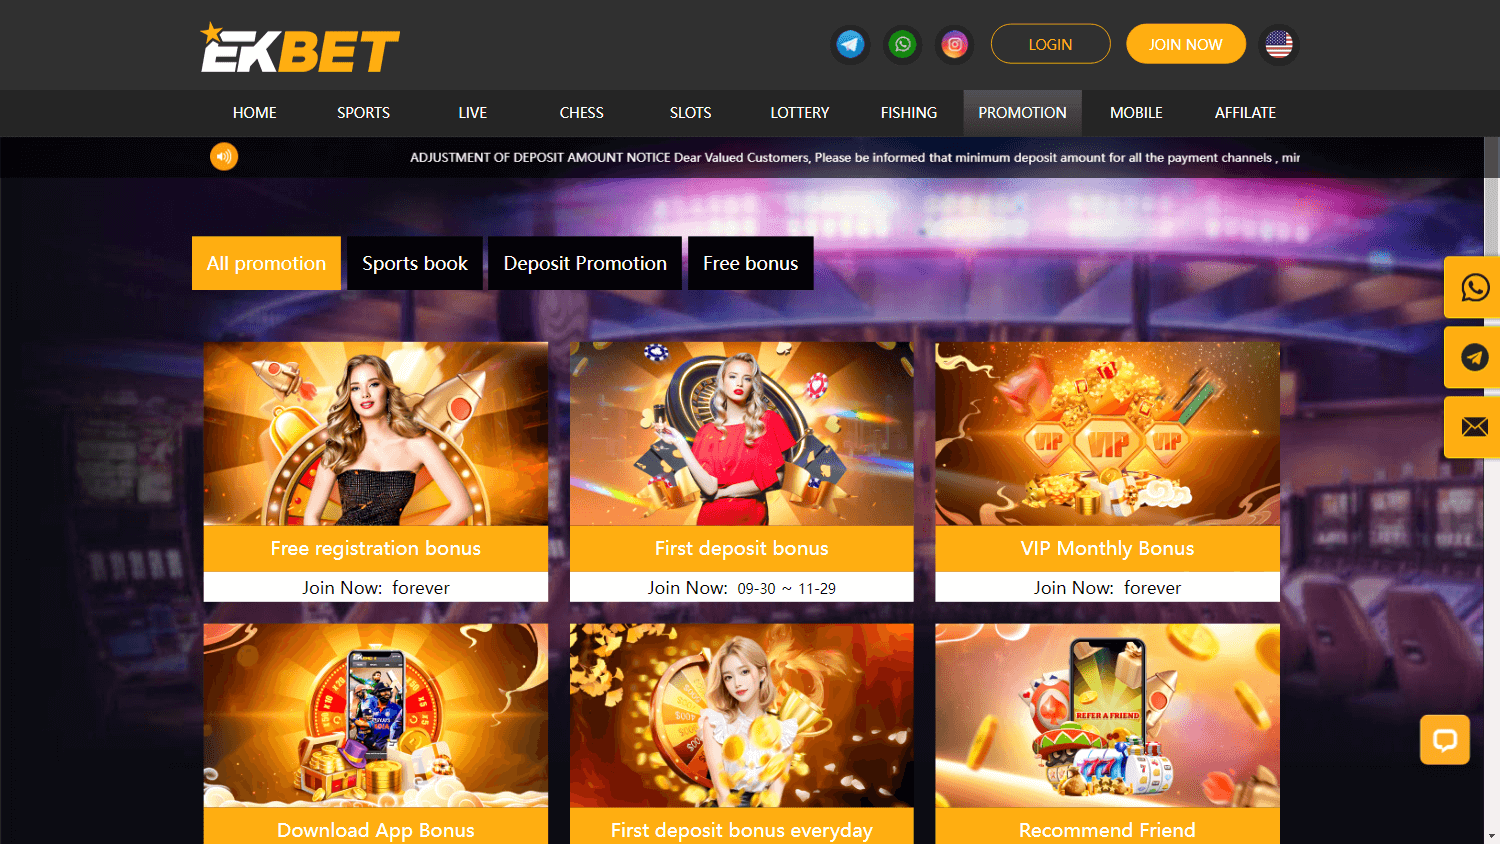 ekbet_casino_promotions_desktop